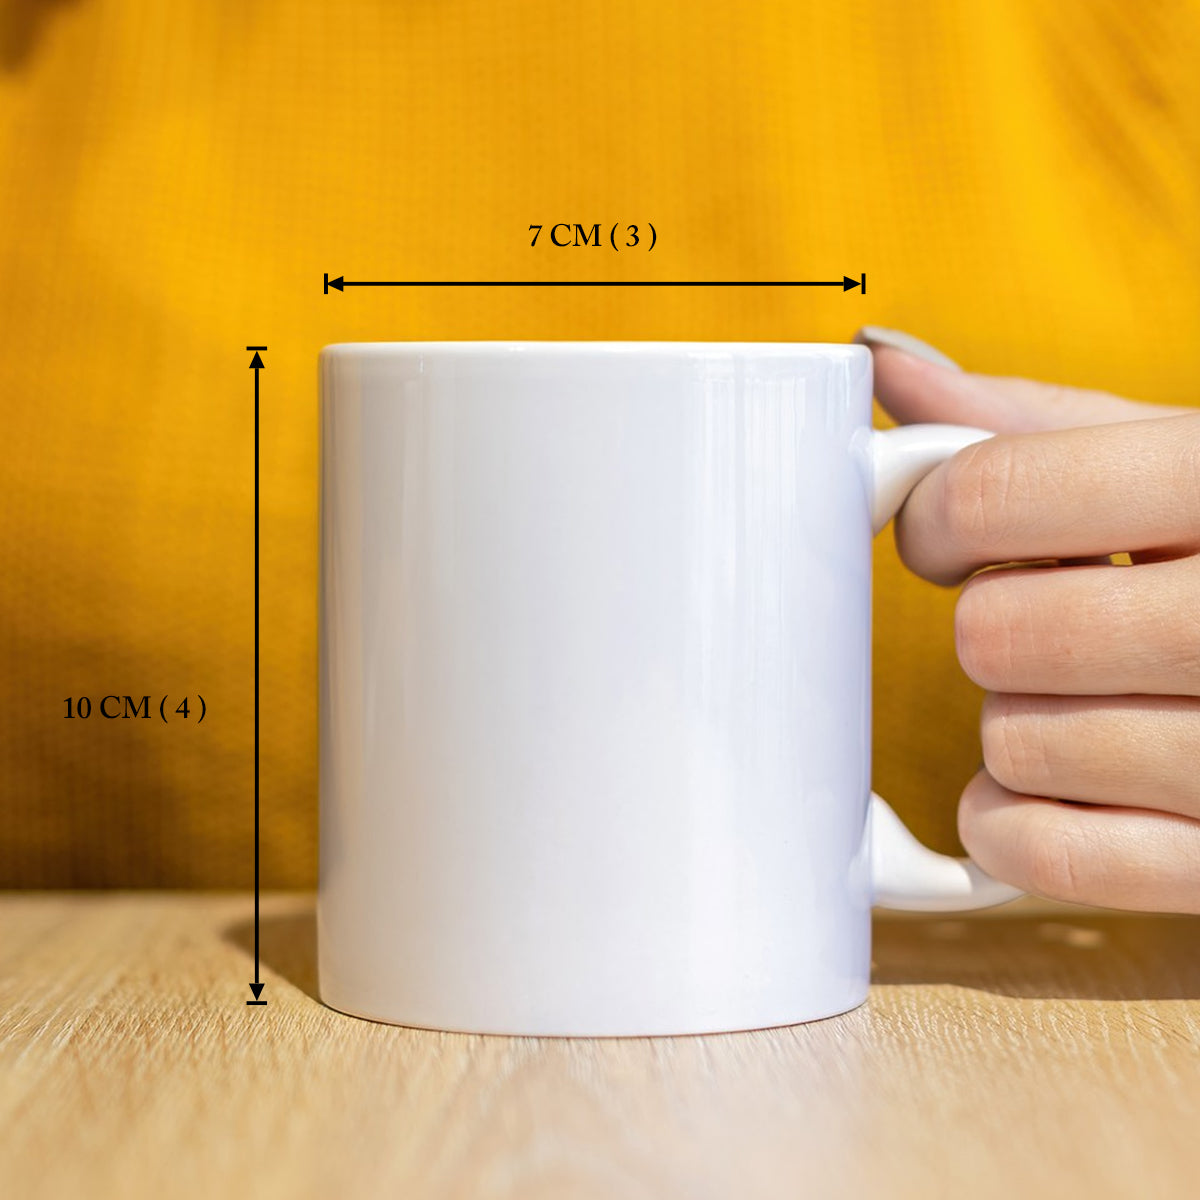 Personalised Couples' Keepsake Coffee Mug